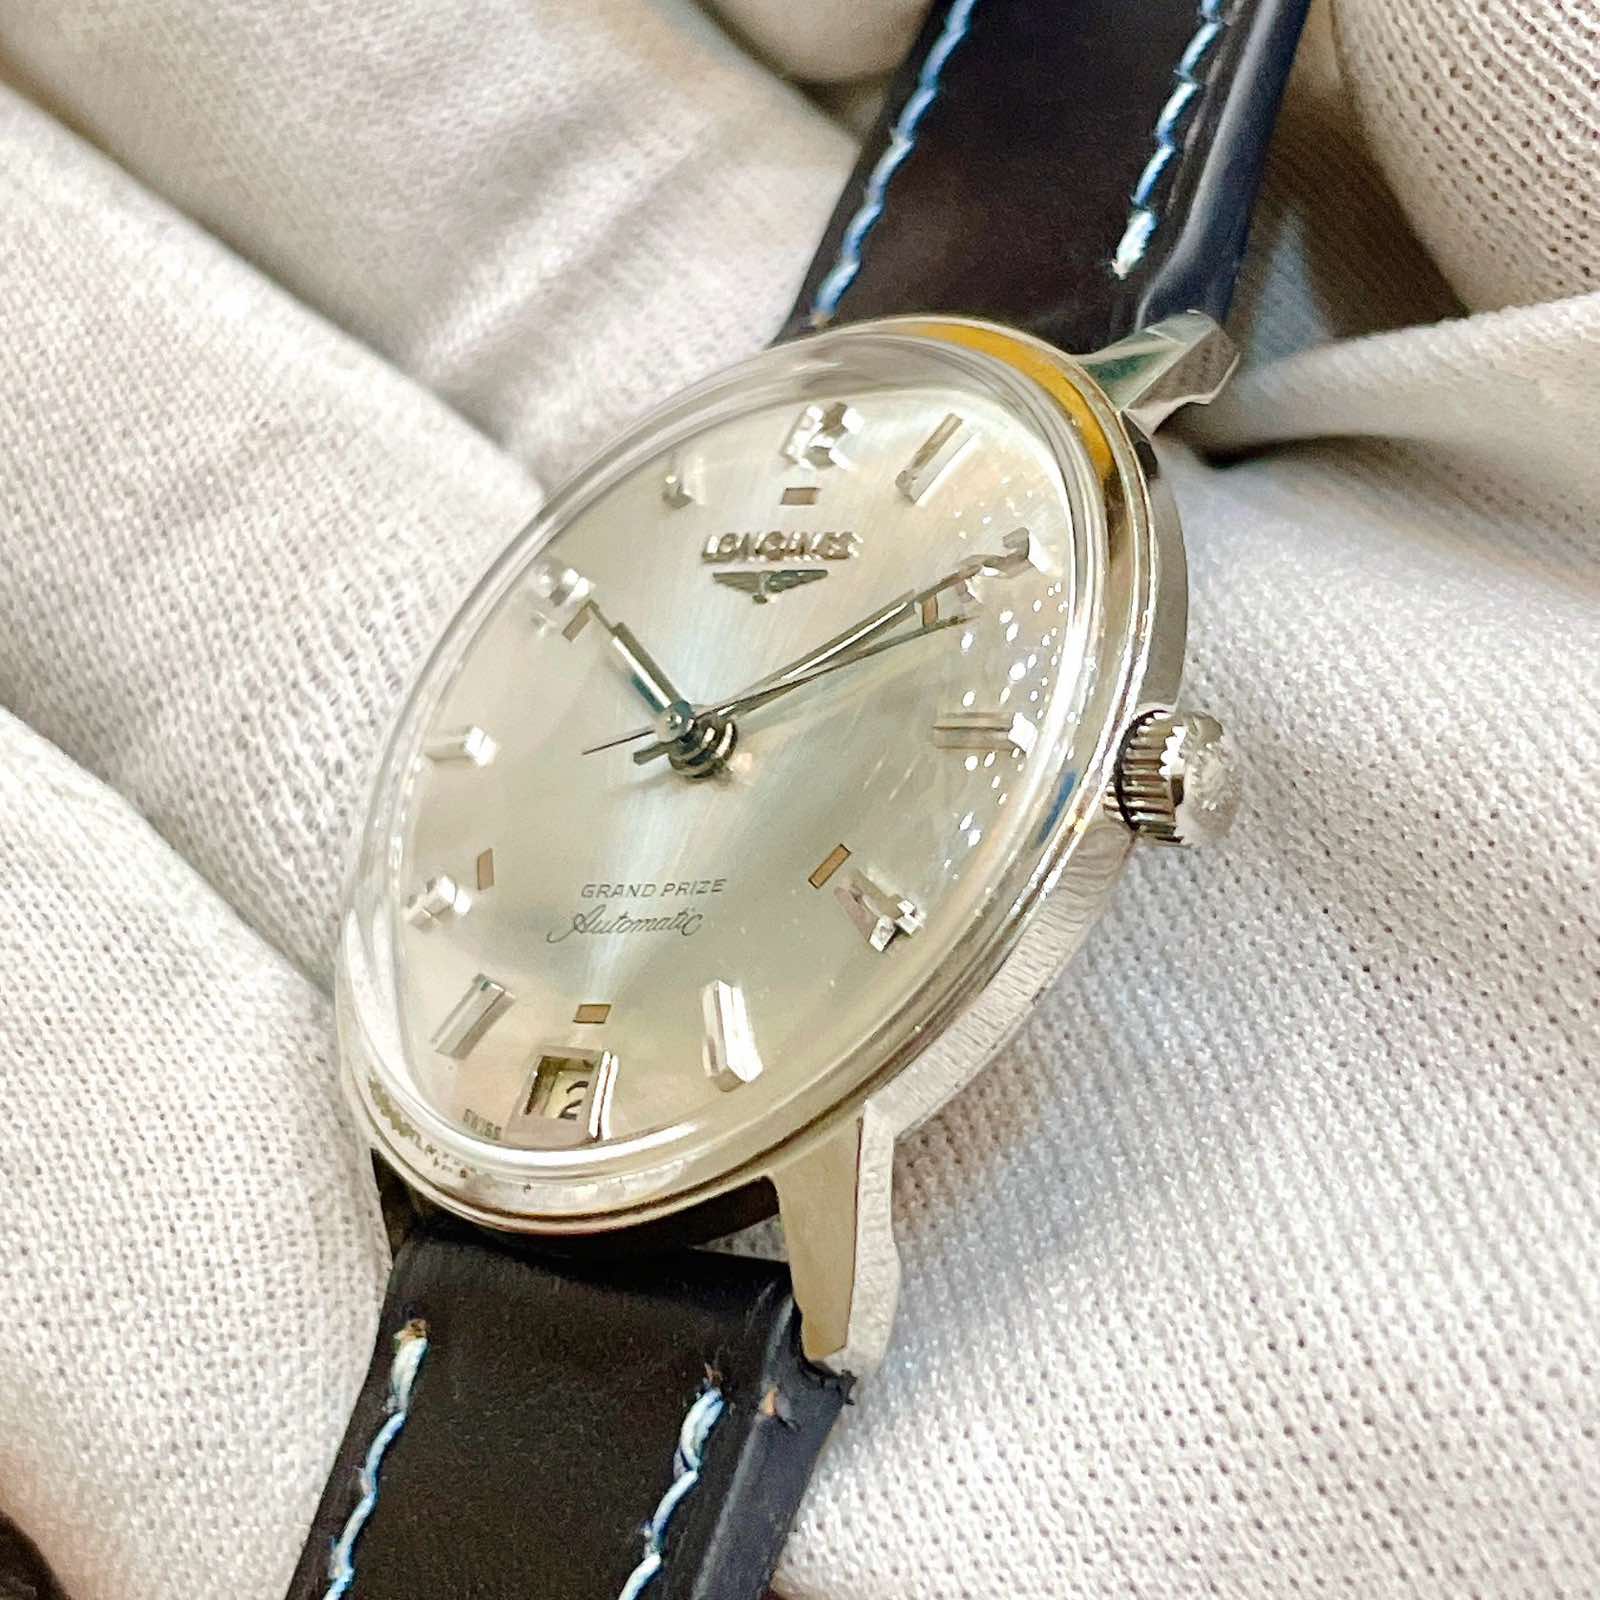 Đồng hồ cổ Longines GRAND PRIZE automatic chính hãng Thuỵ Sĩ